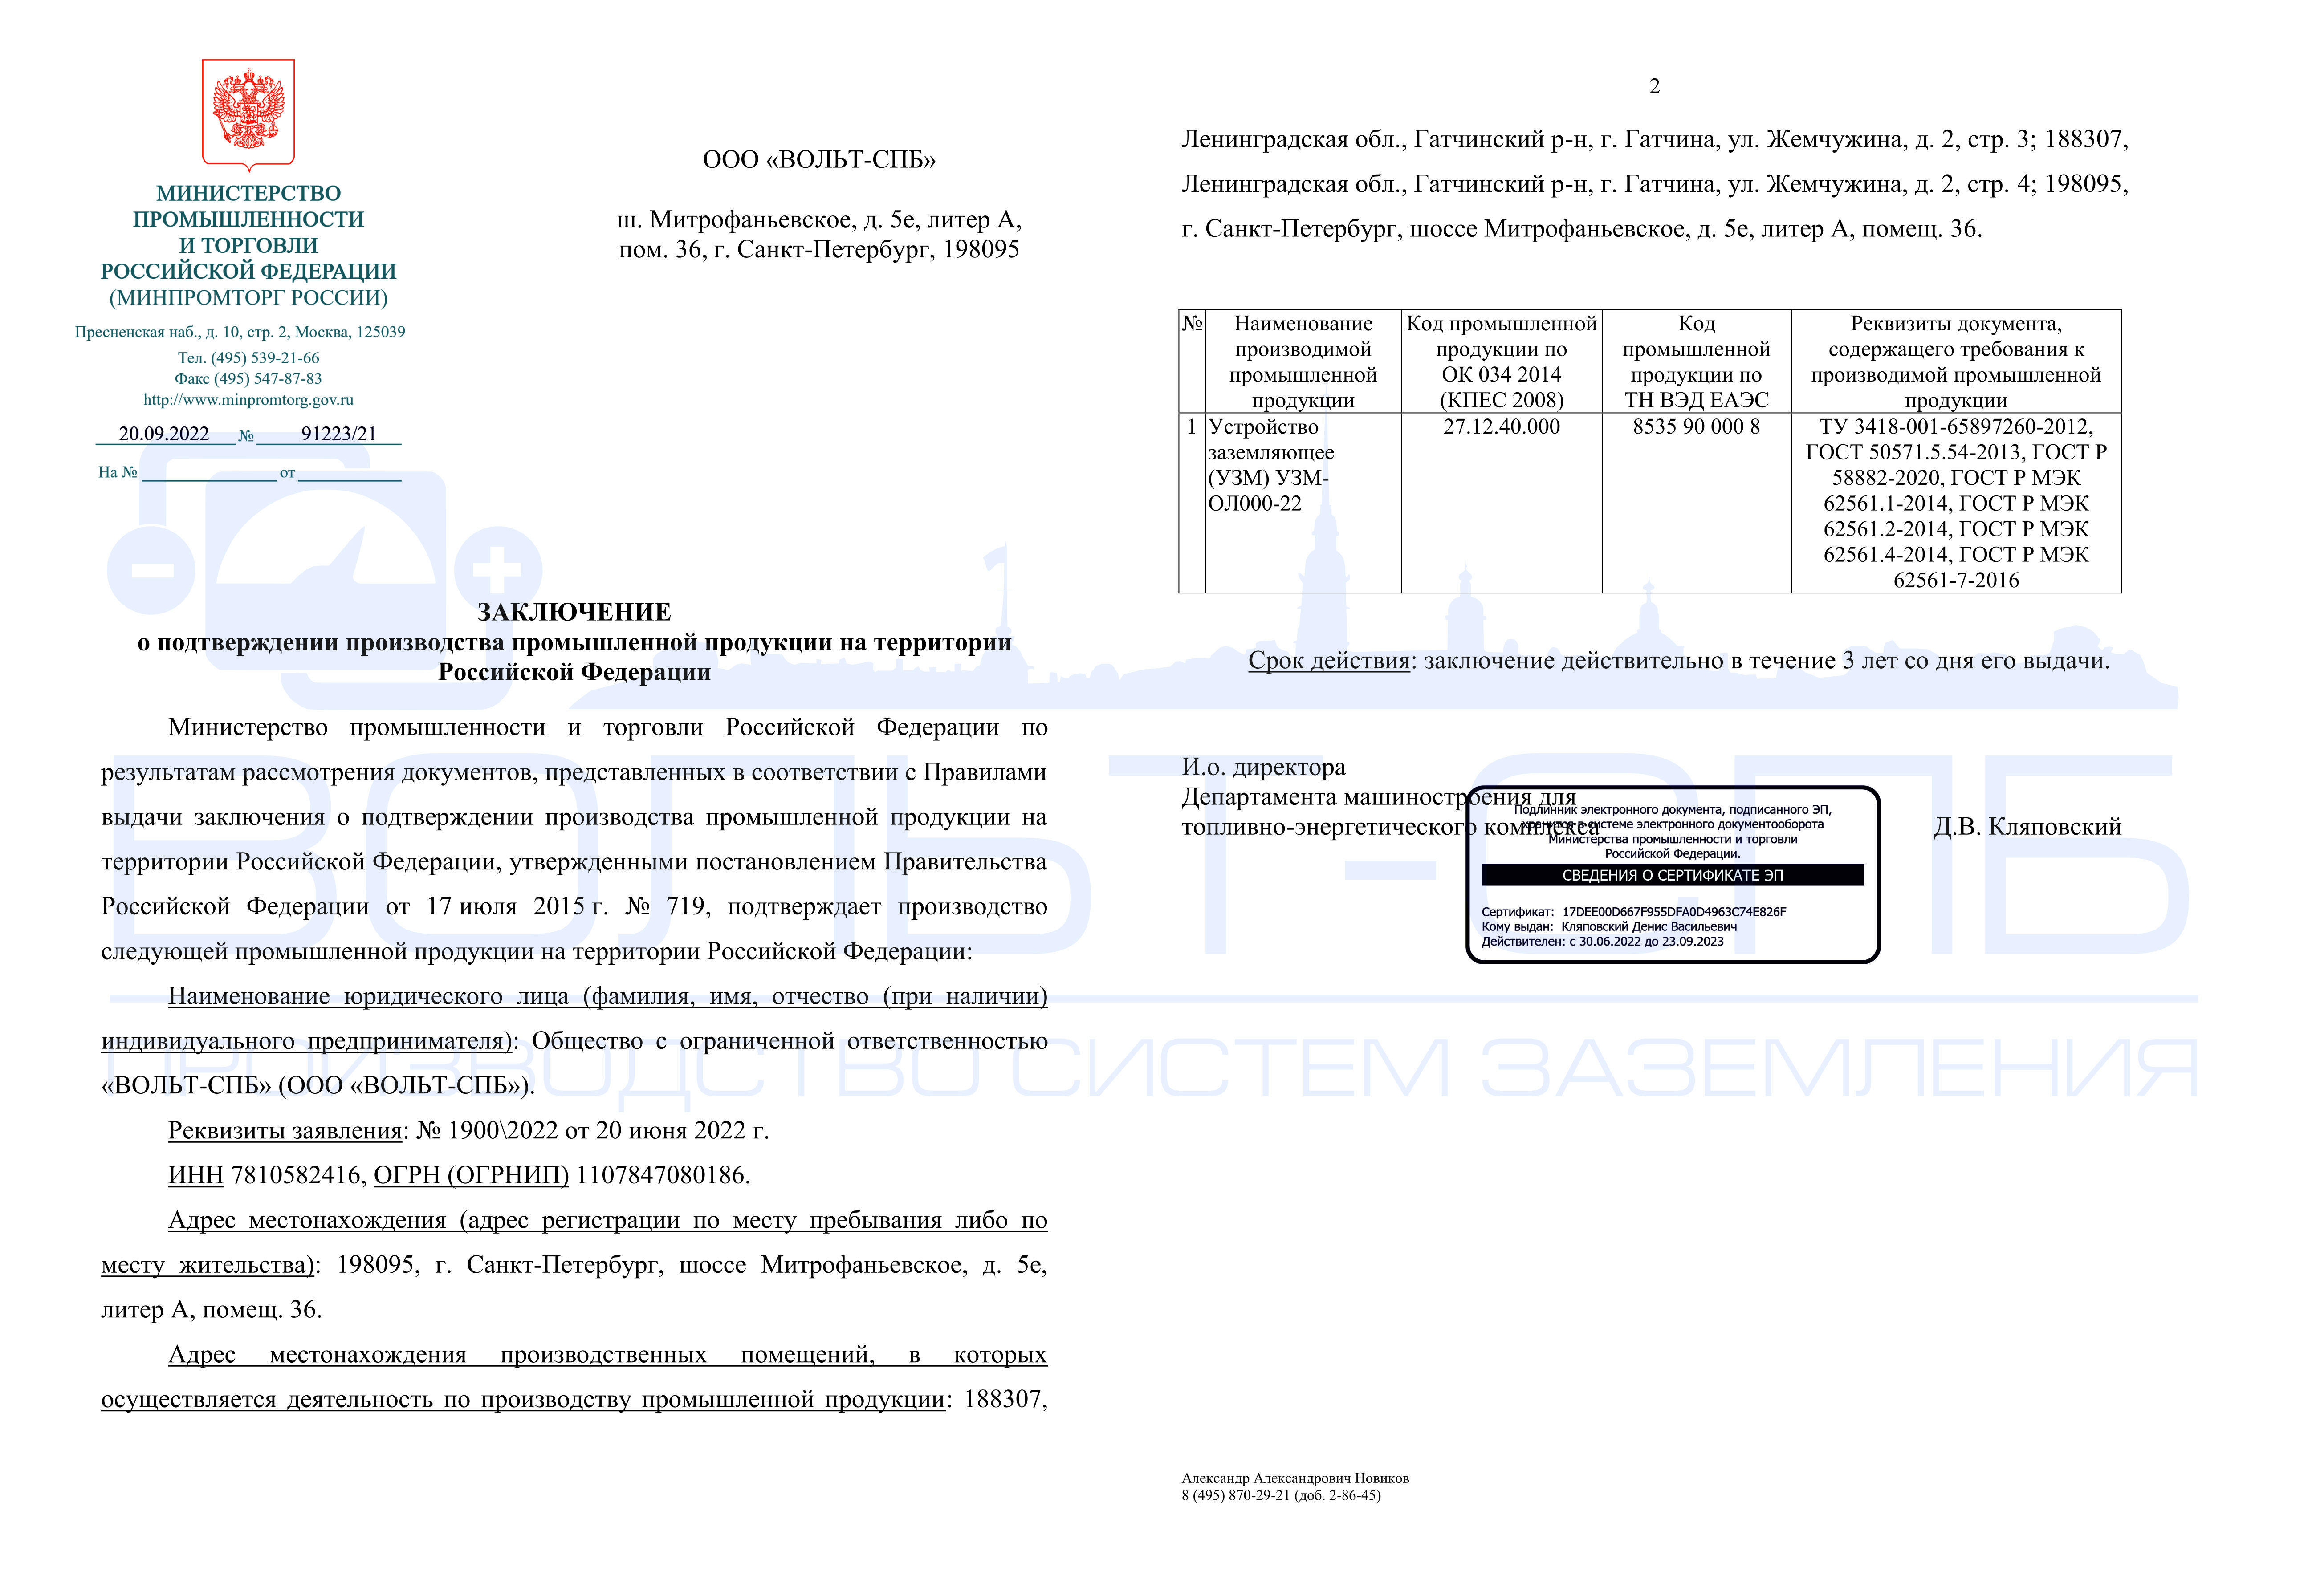 Заключение МИНПРОМТОРГа о подтверждении производства промышленной продукции на территории РФ (на УЗМ)